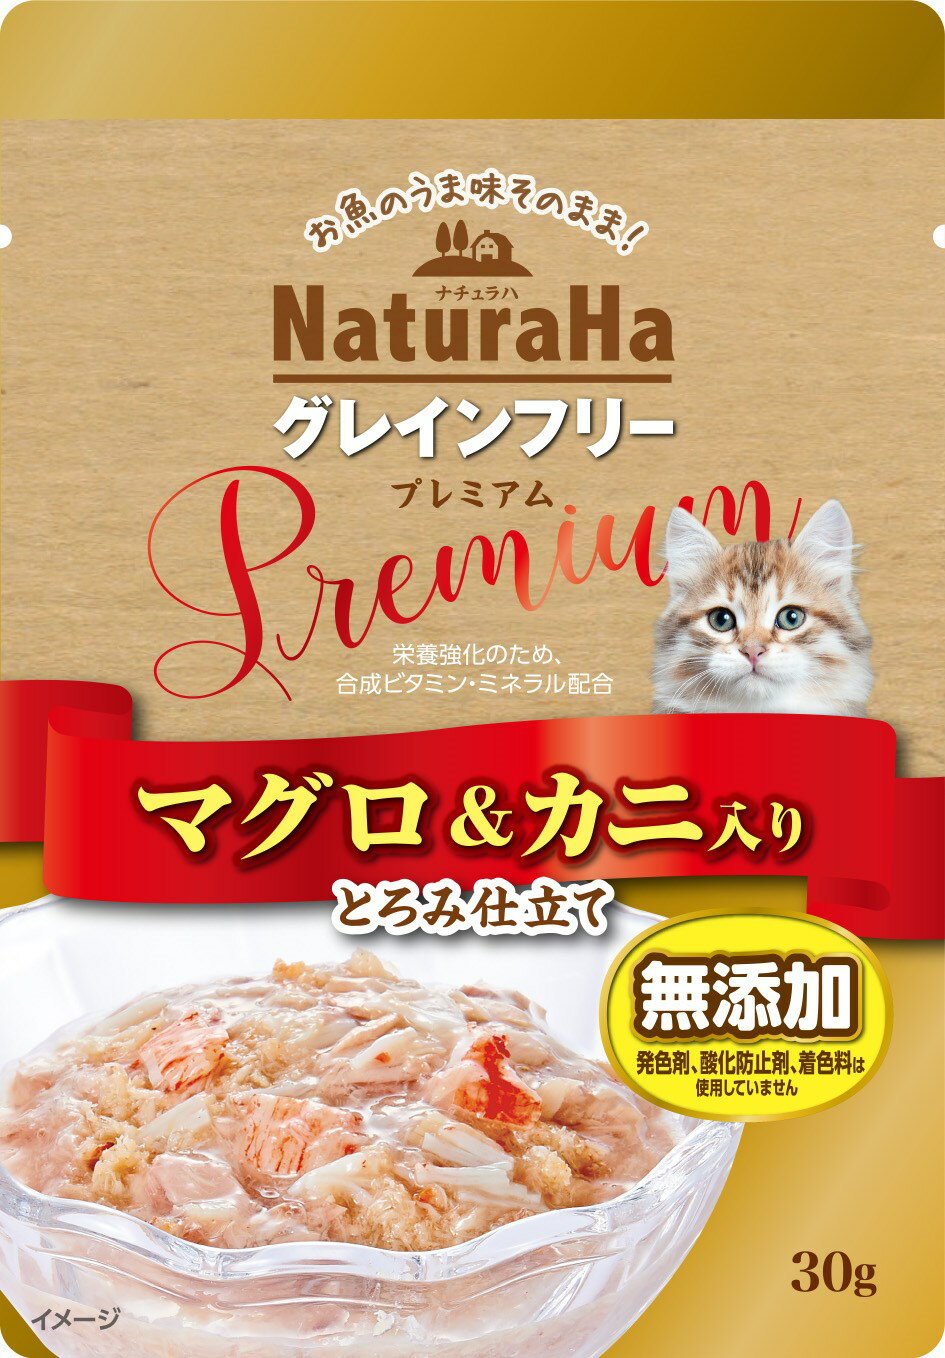 NaturaHa ナチュラハ グレインフリー Premium マグロ＆カニ入り とろみ仕立て 30g ネコポス可12個まで[M便 1/12]キャットフード マルカンサンライズ